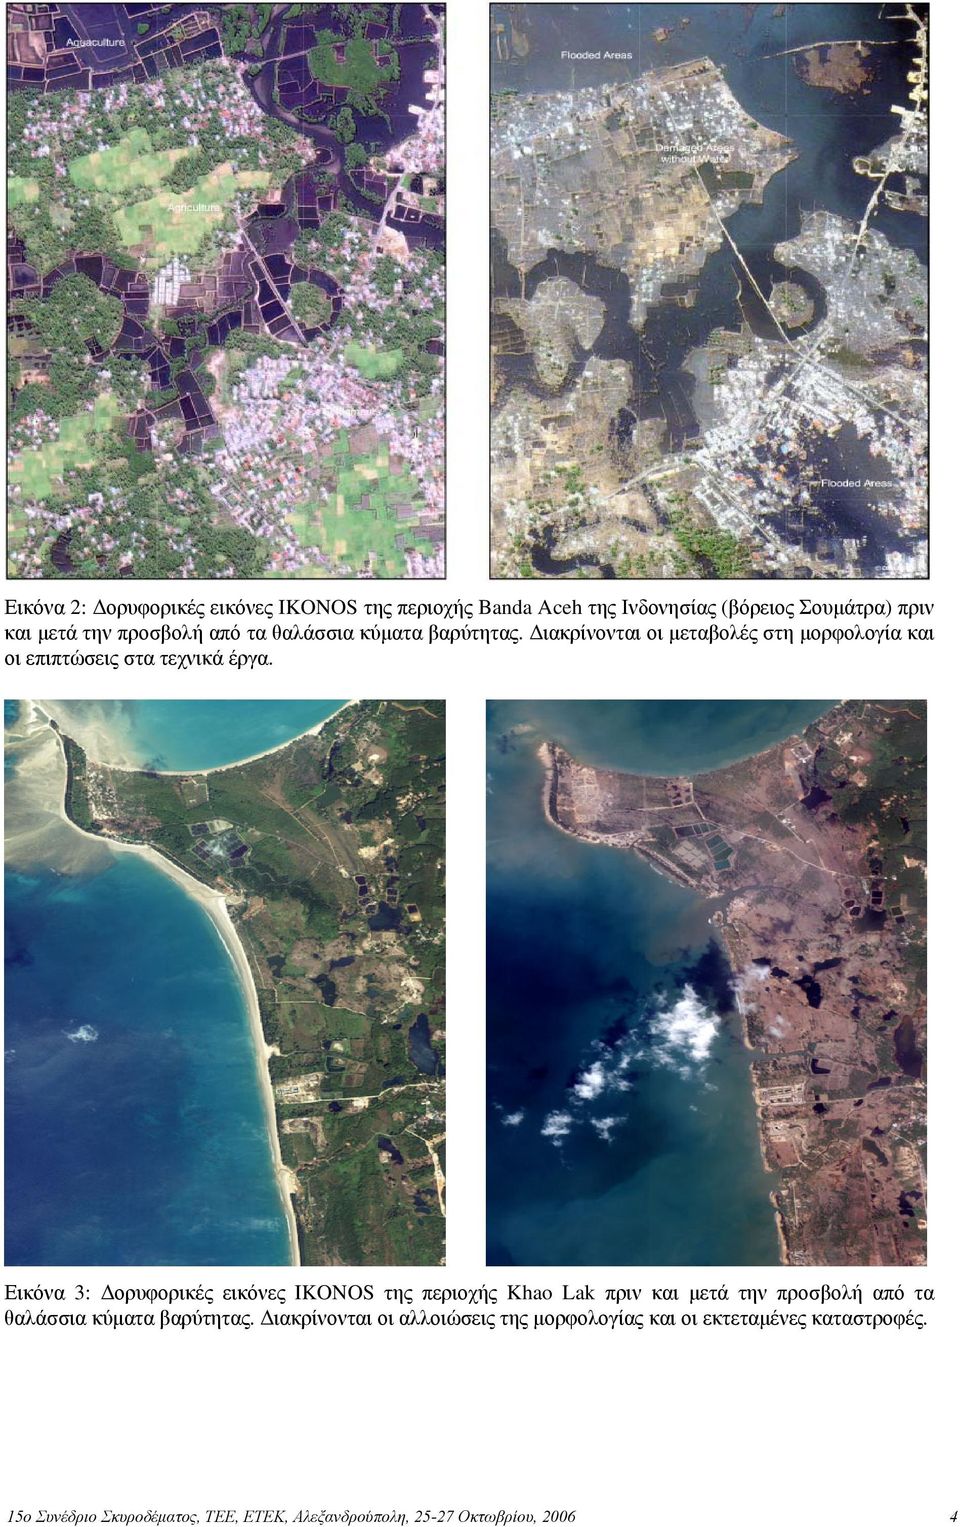 Εικόνα 3: Δορυφορικές εικόνες IKONOS της περιοχής Khao Lak πριν και μετά την προσβολή από τα θαλάσσια κύματα βαρύτητας.